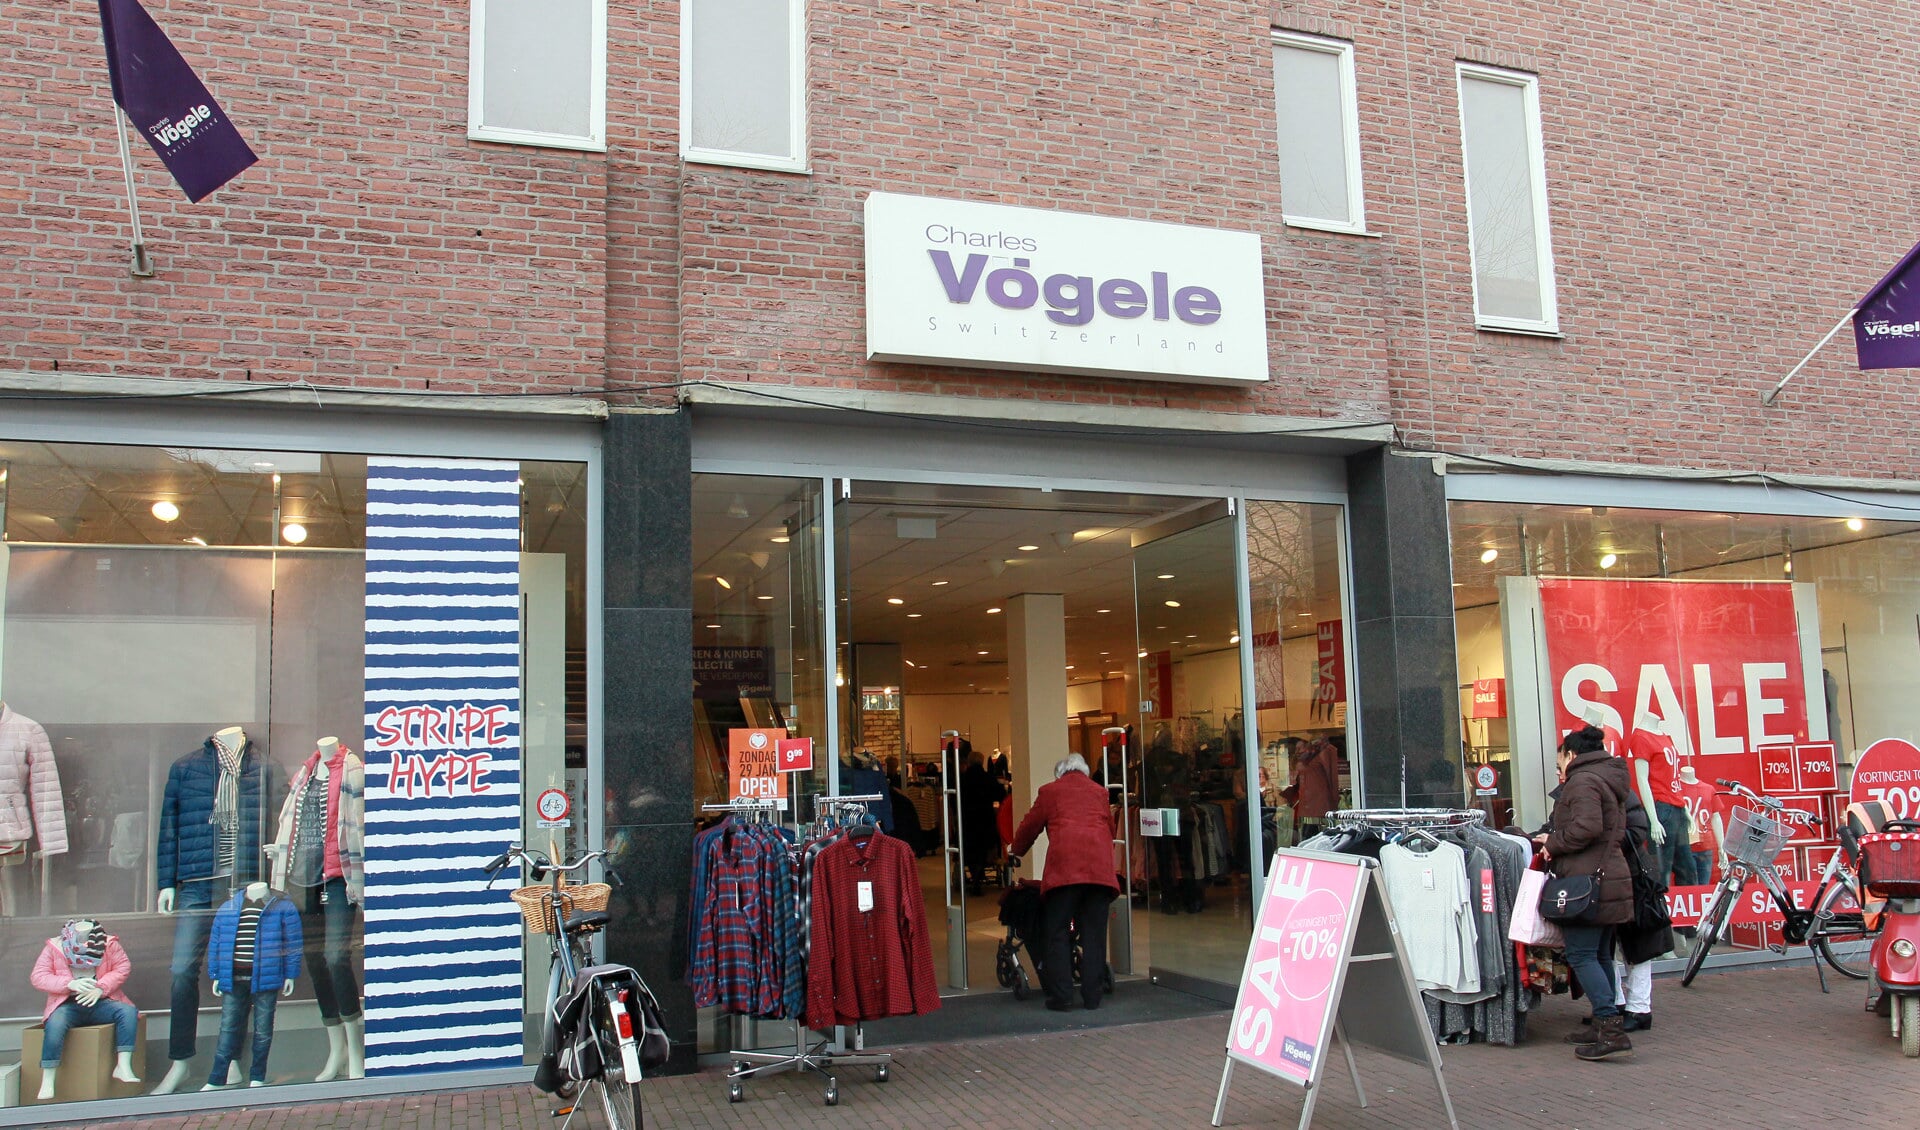 Het pand van Charles Vögele in het Osse centrum.